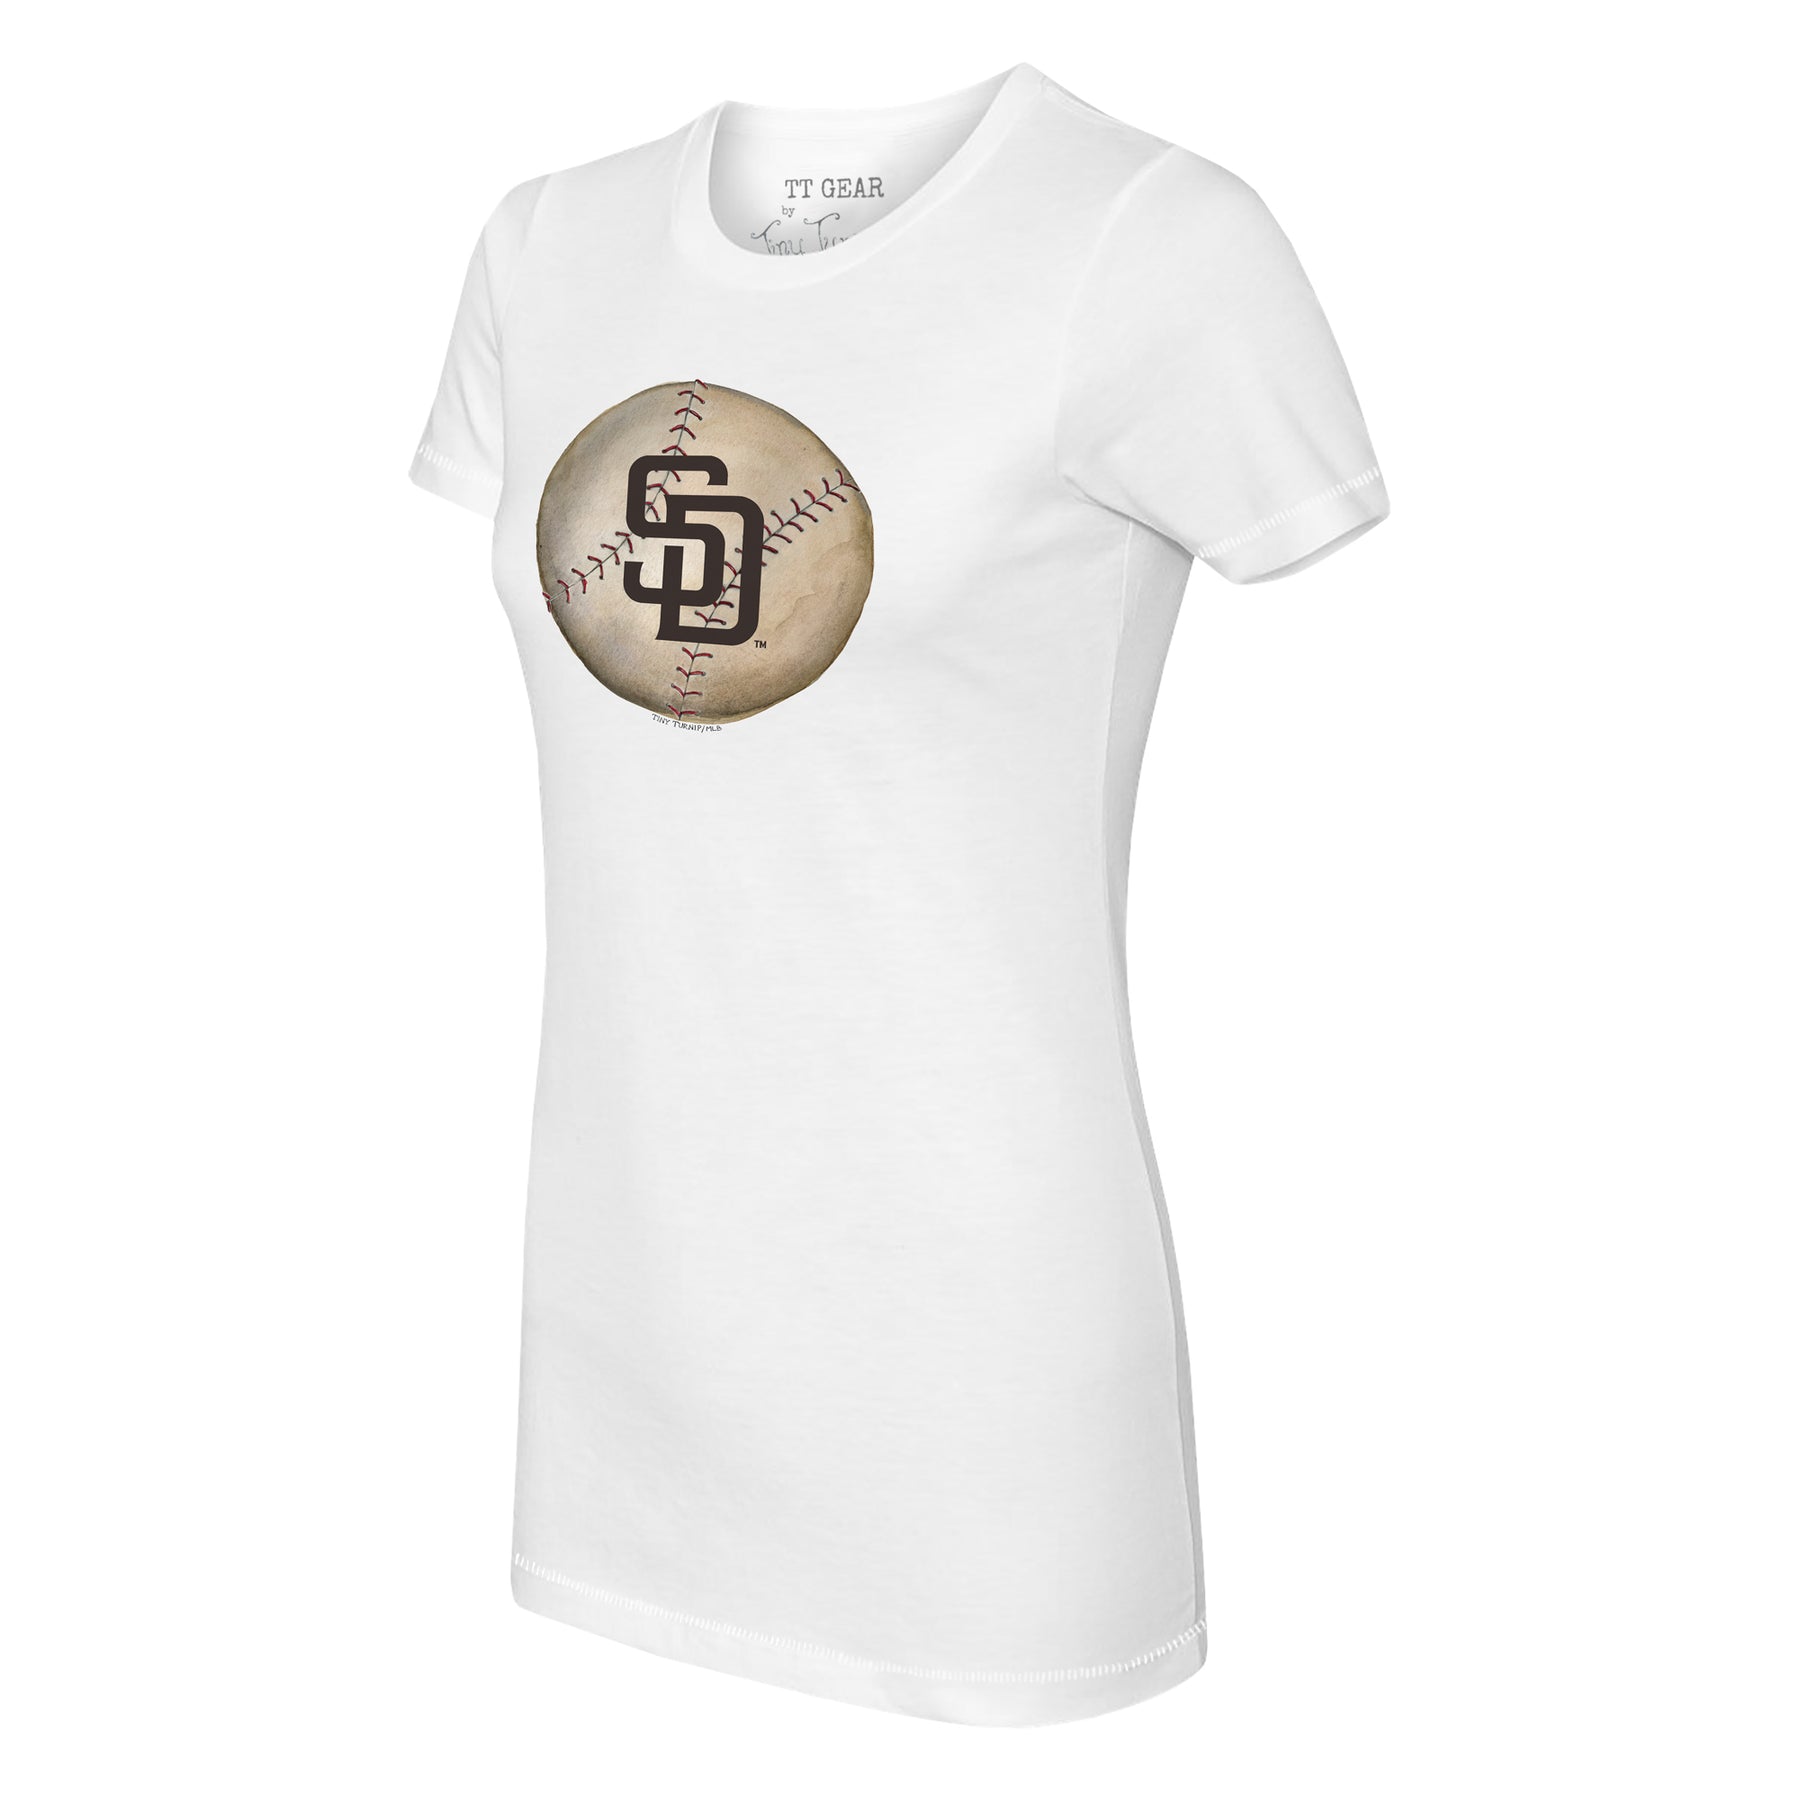 Tiny Turnip San Diego Padres Dirt Ball Tee Shirt Women's XS / White